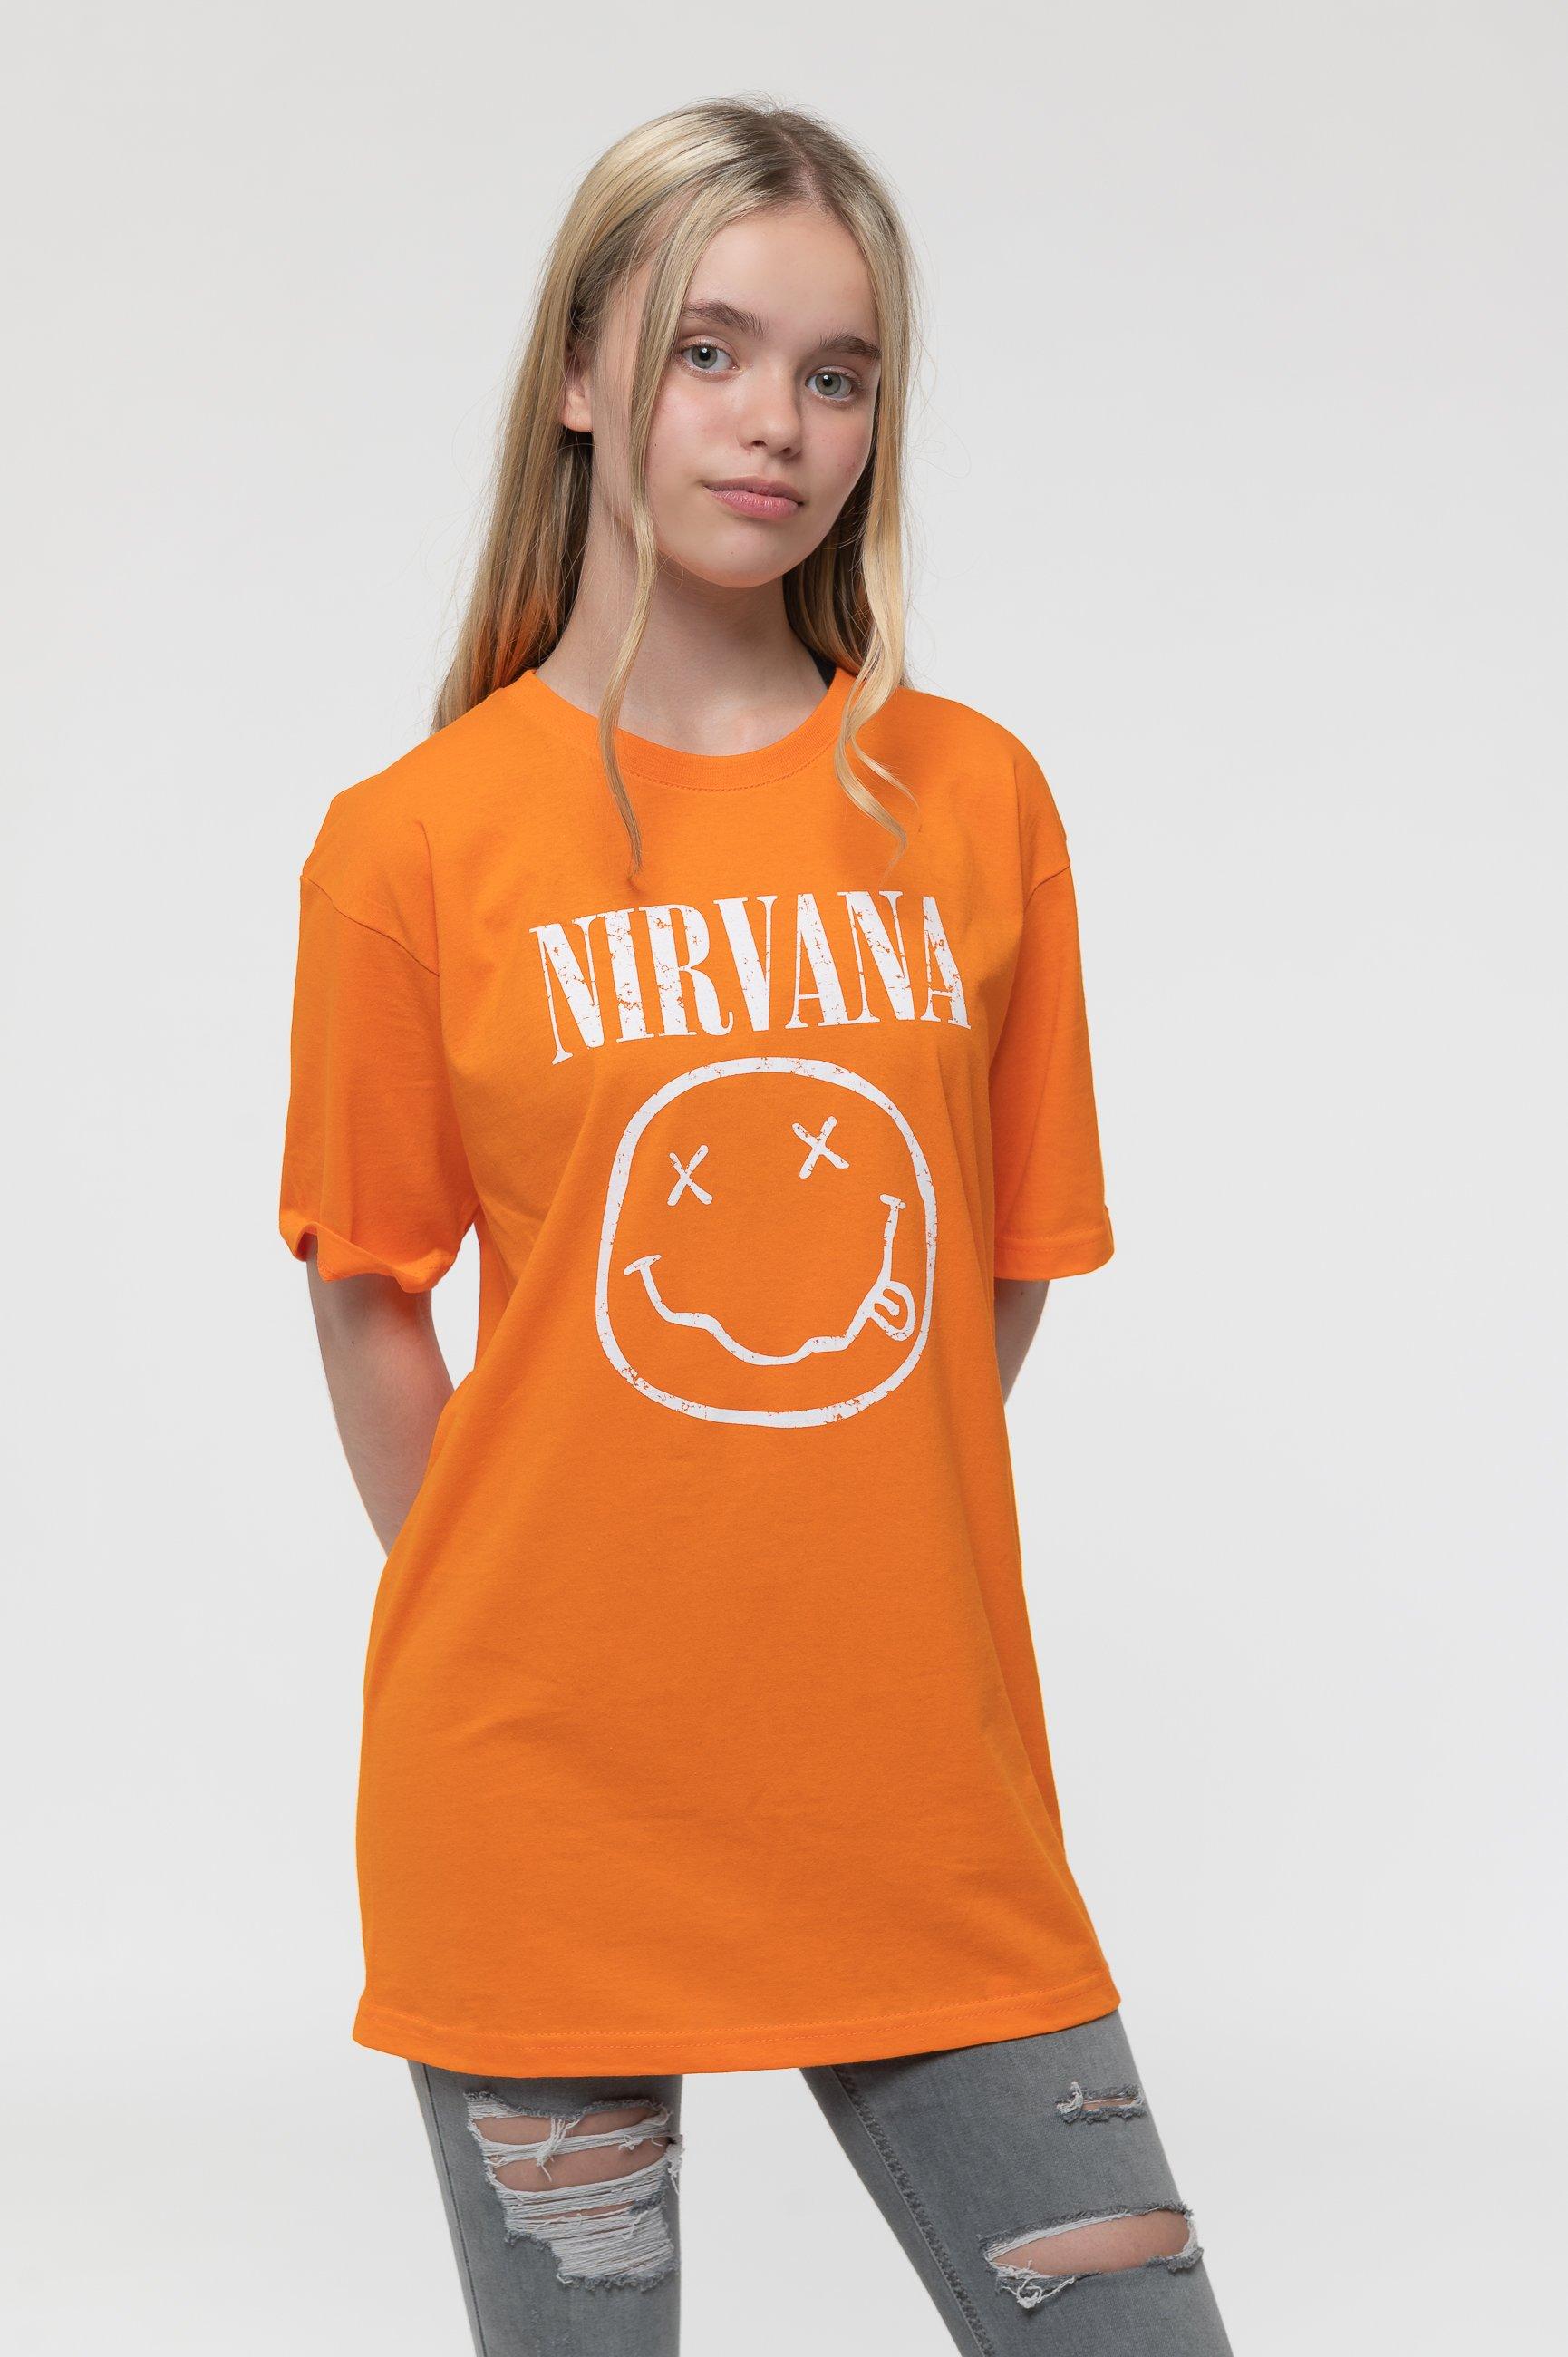 Белая футболка со смайликом Nirvana, оранжевый футболка смайлик размер 15 лет белый